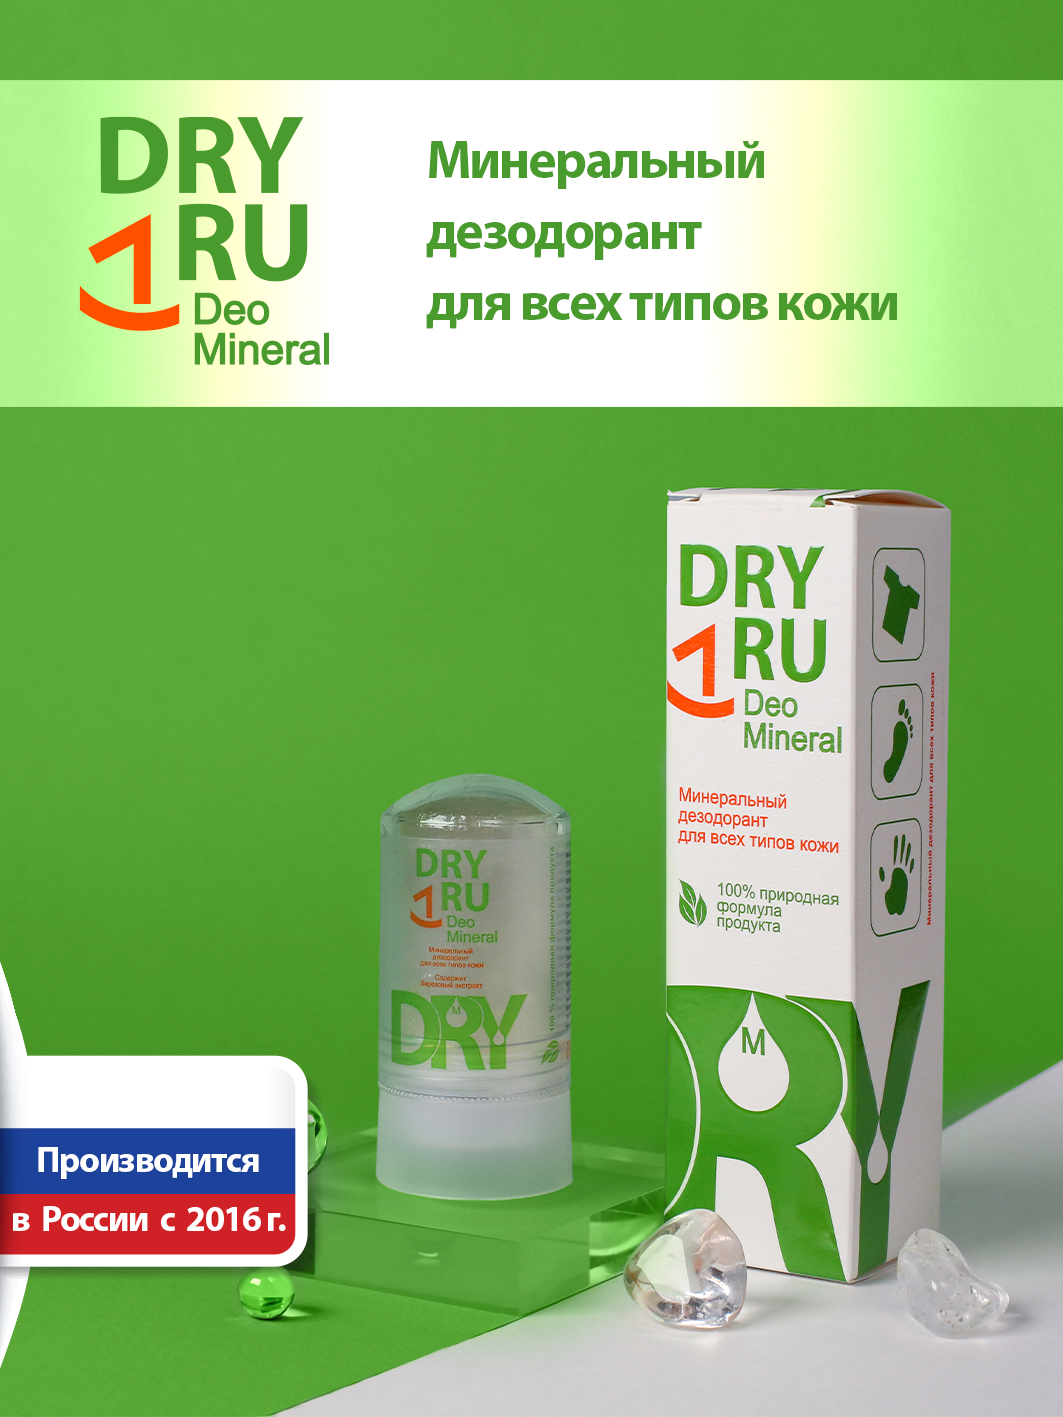 Deo Mineral минеральный дезодорант драйру